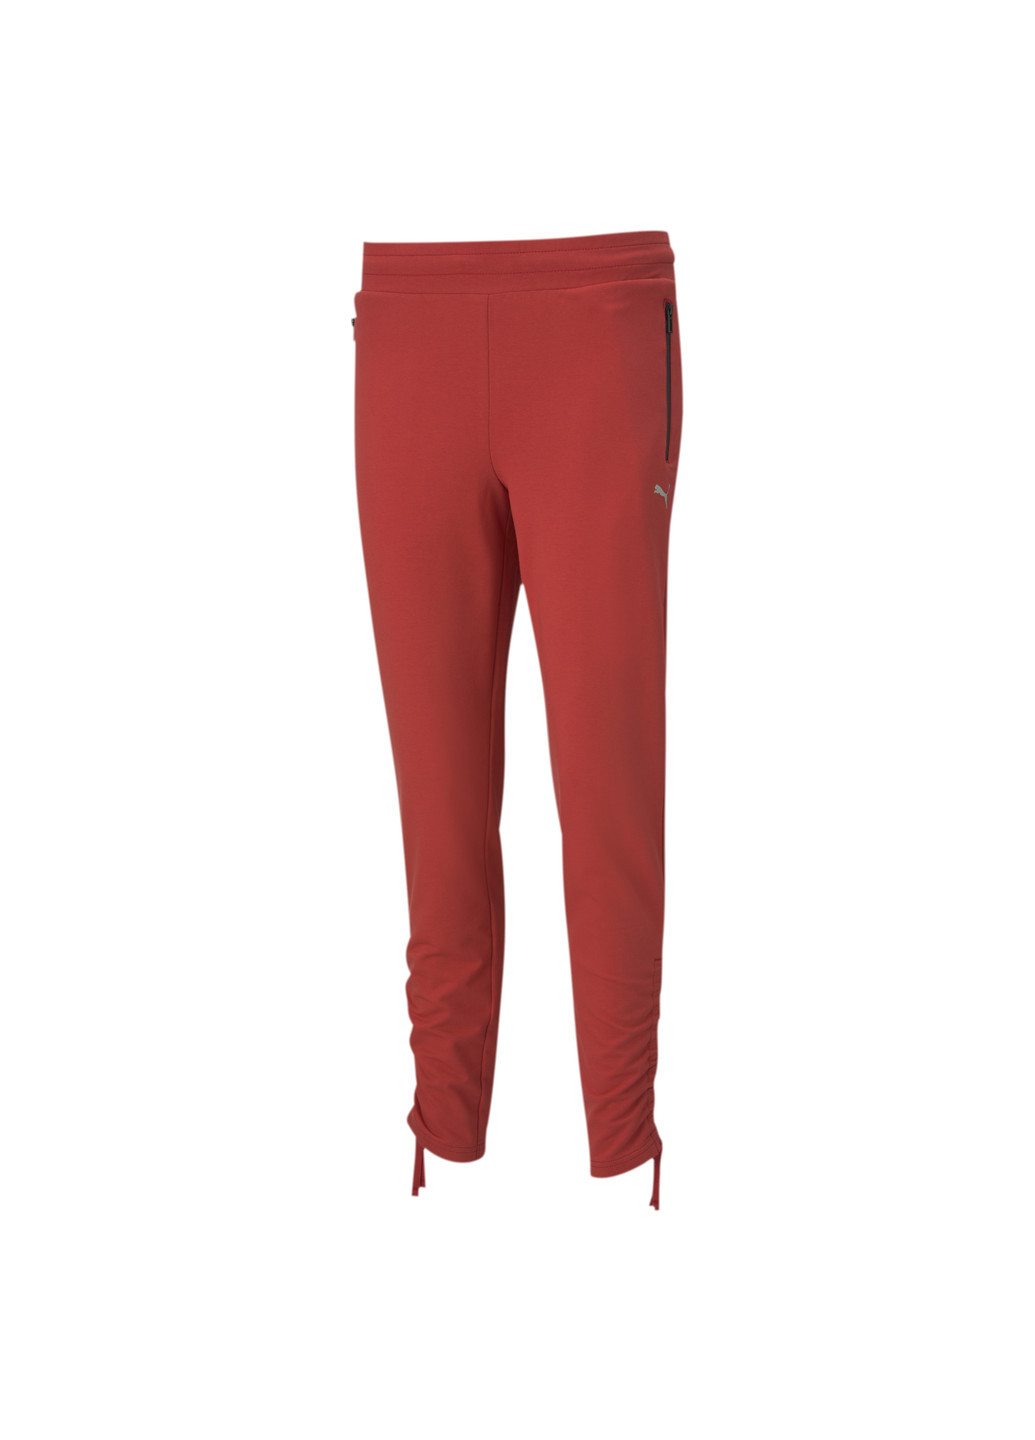 Красные демисезонные штаны scuderia ferrari style women's sweatpants Puma